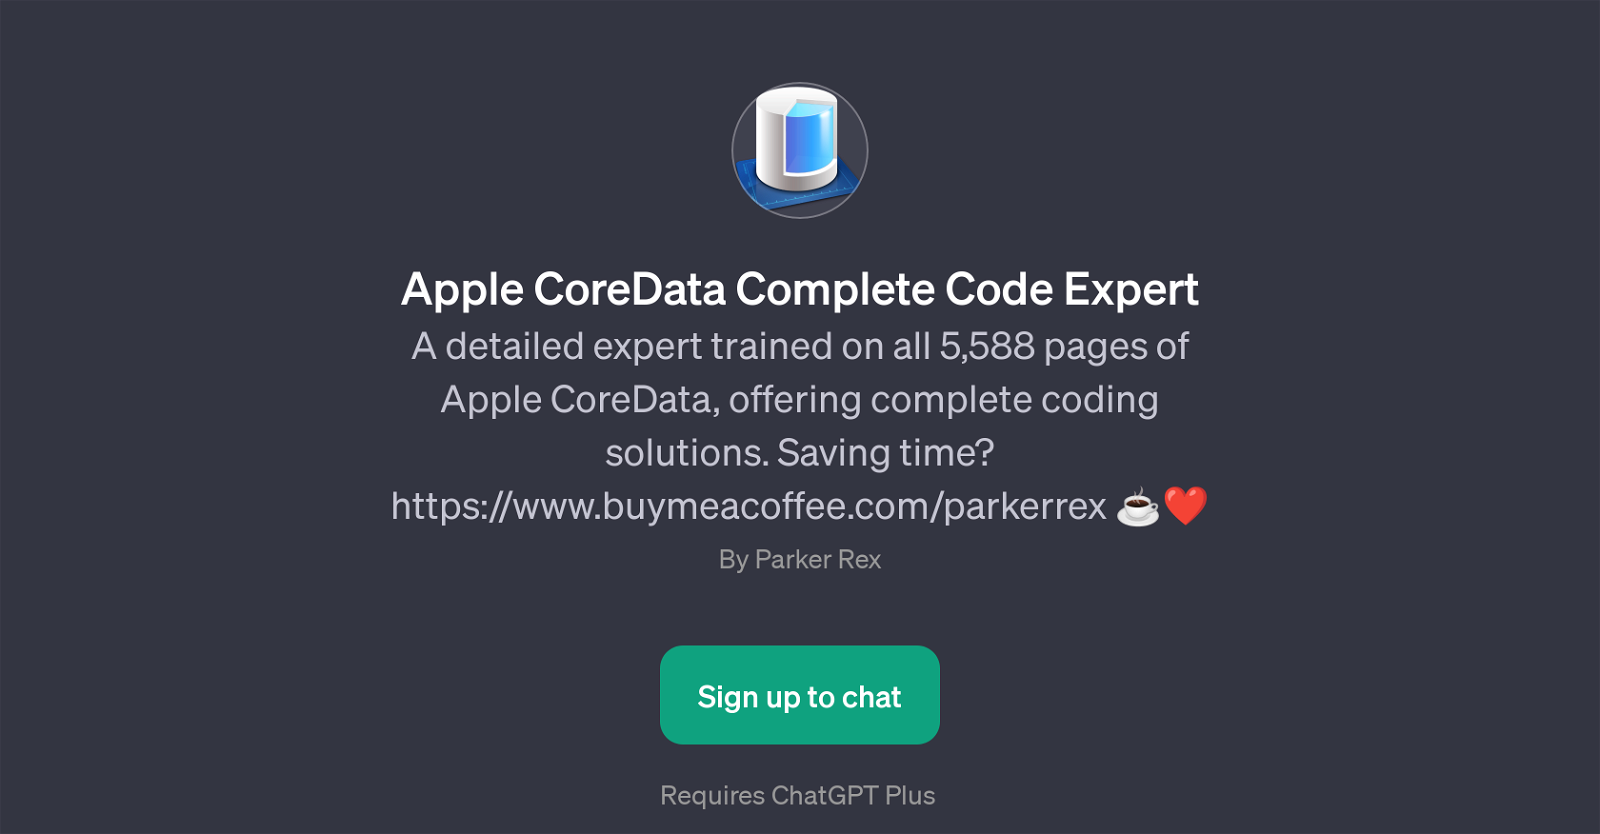 Apple CoreData Complete Code Expert website